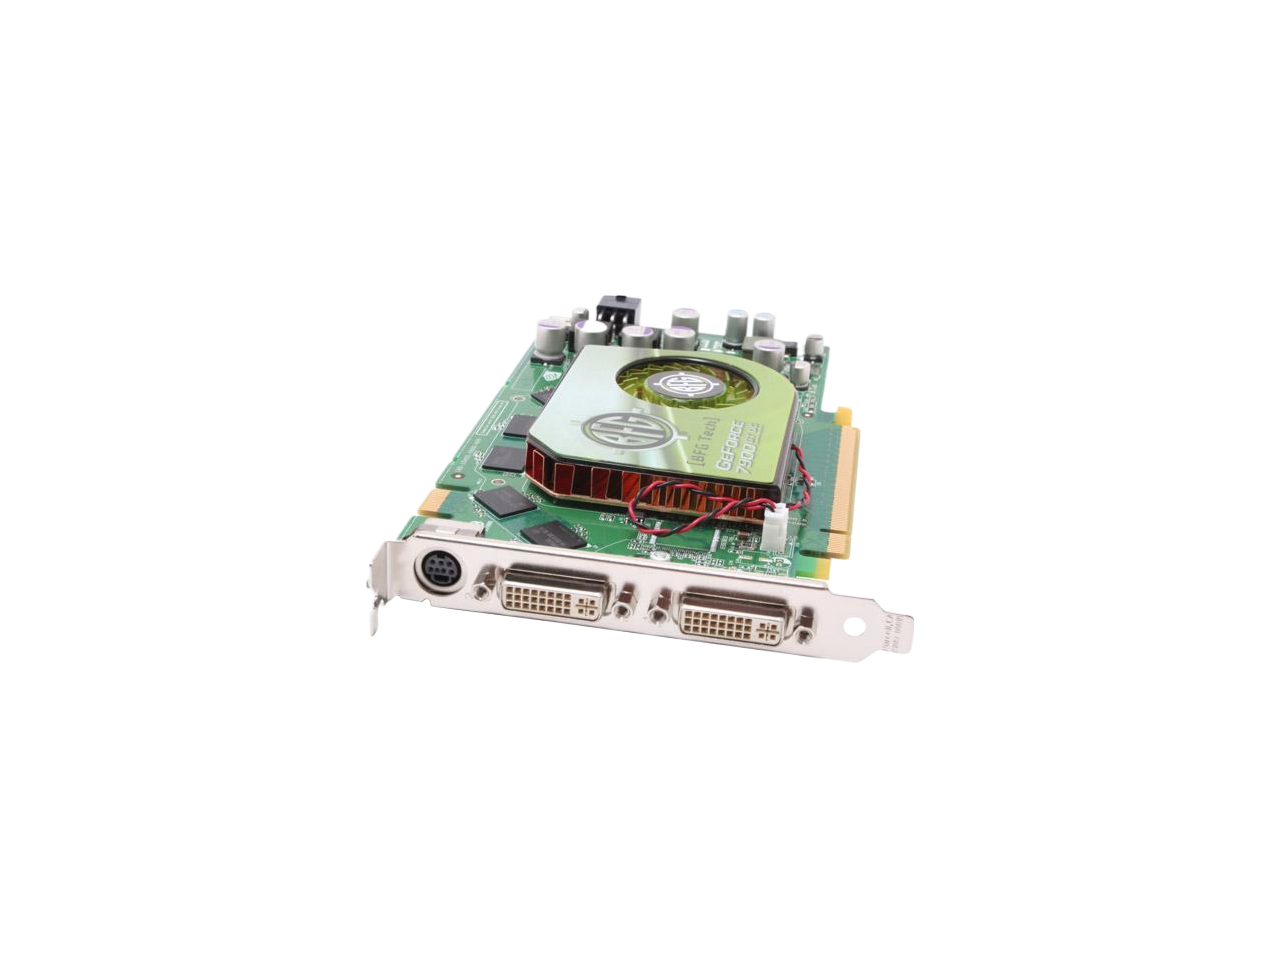 BFG Tech GeForce 7900GT 256MB GDDR3 PCI Express x16 SLI Support Video Card BFGR79256GTOCE